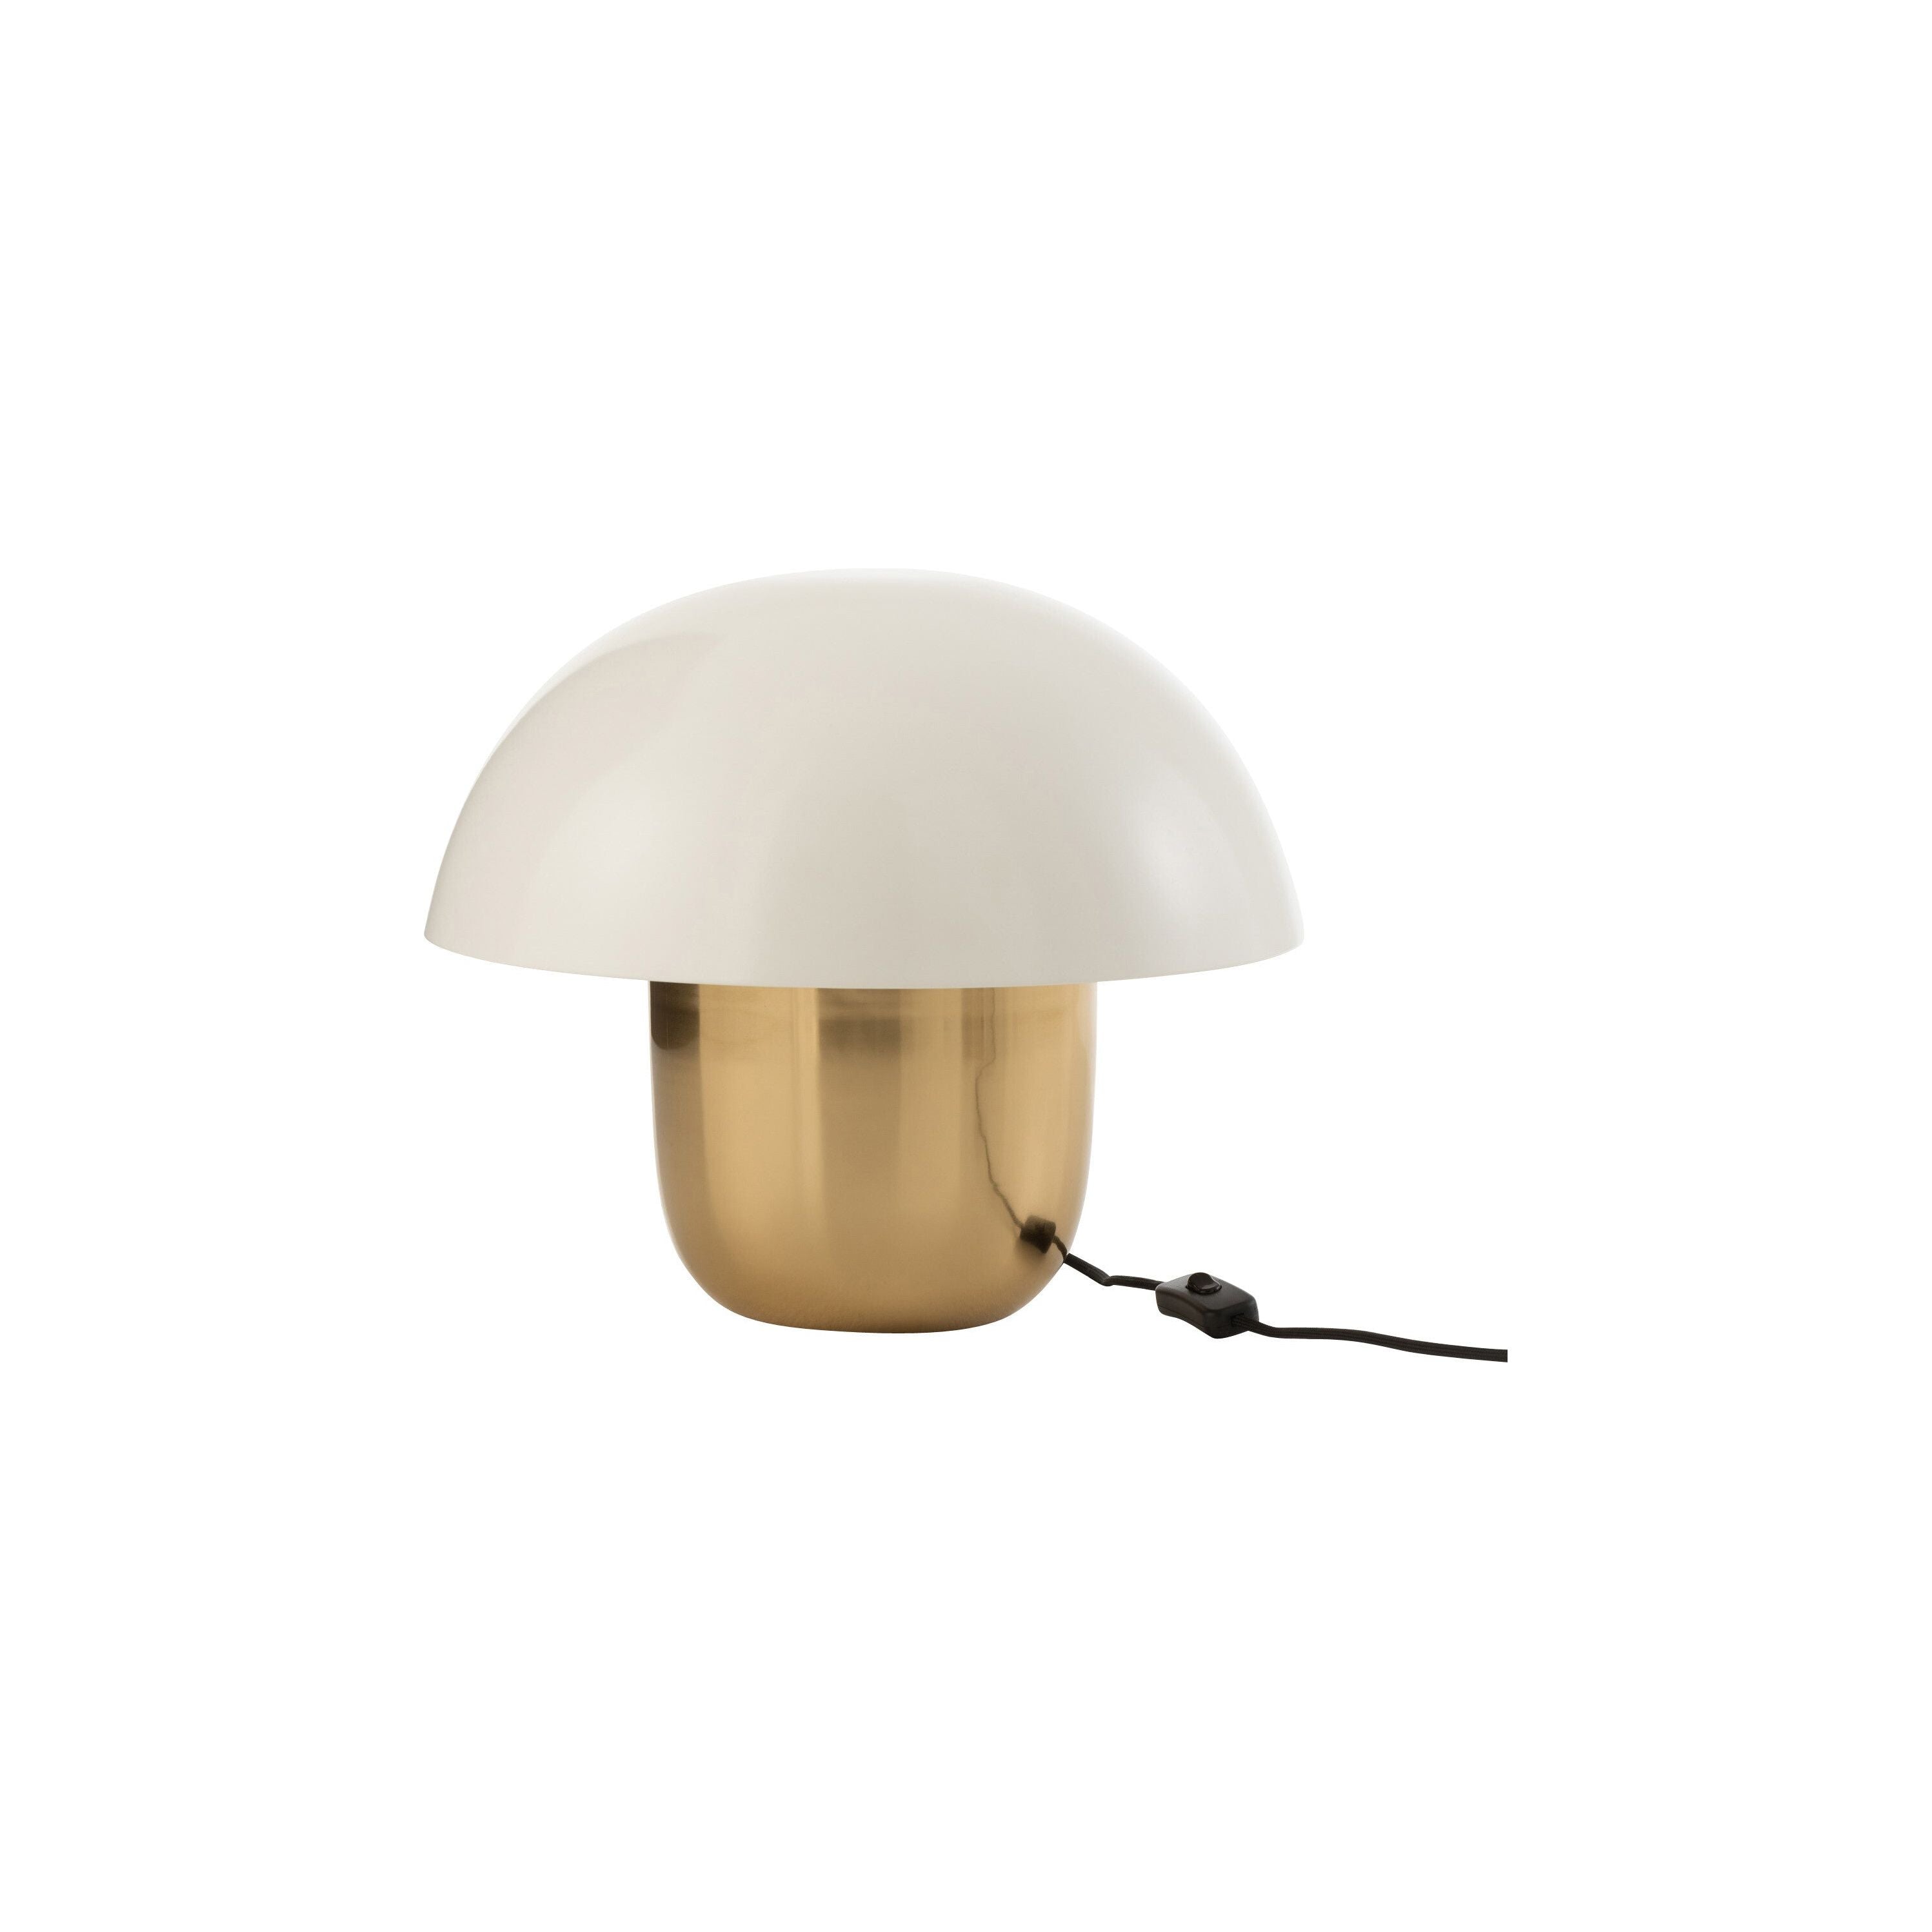 Lamp Mushroom Iron White/gold Small